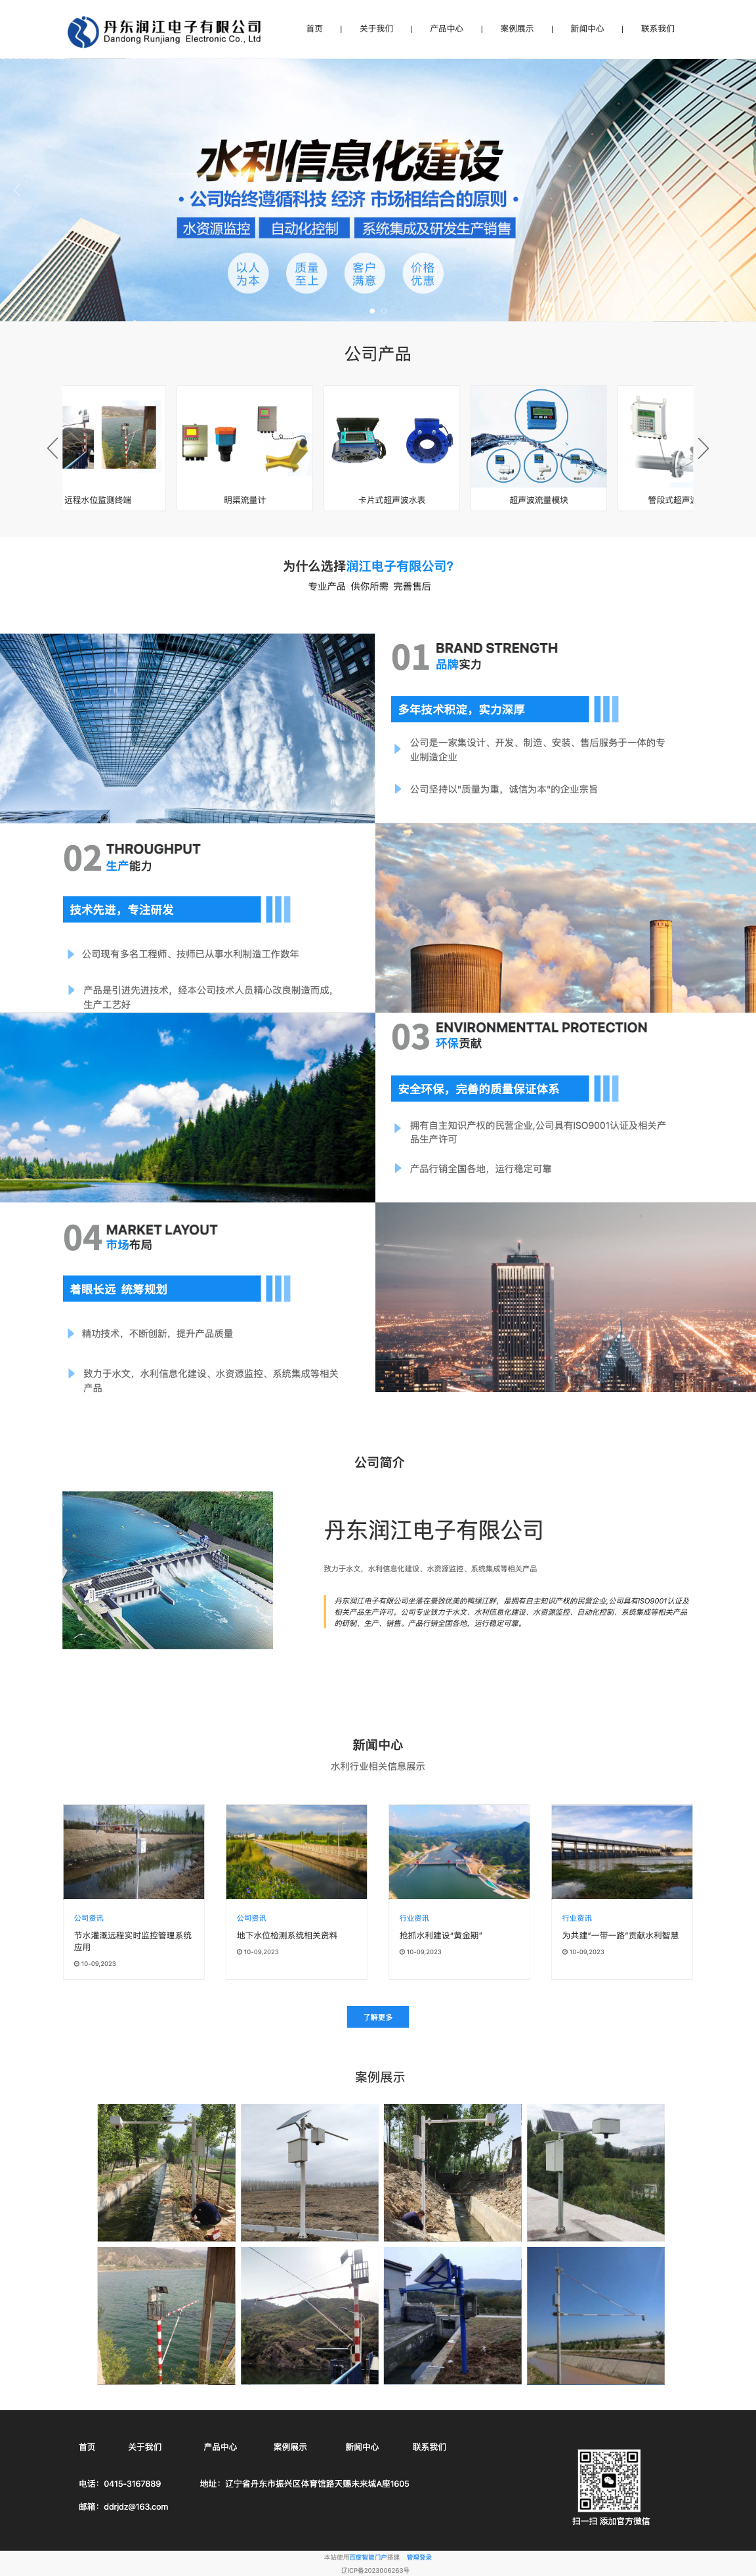 丹东润江电子有限公司-全网门户展示版案例展示